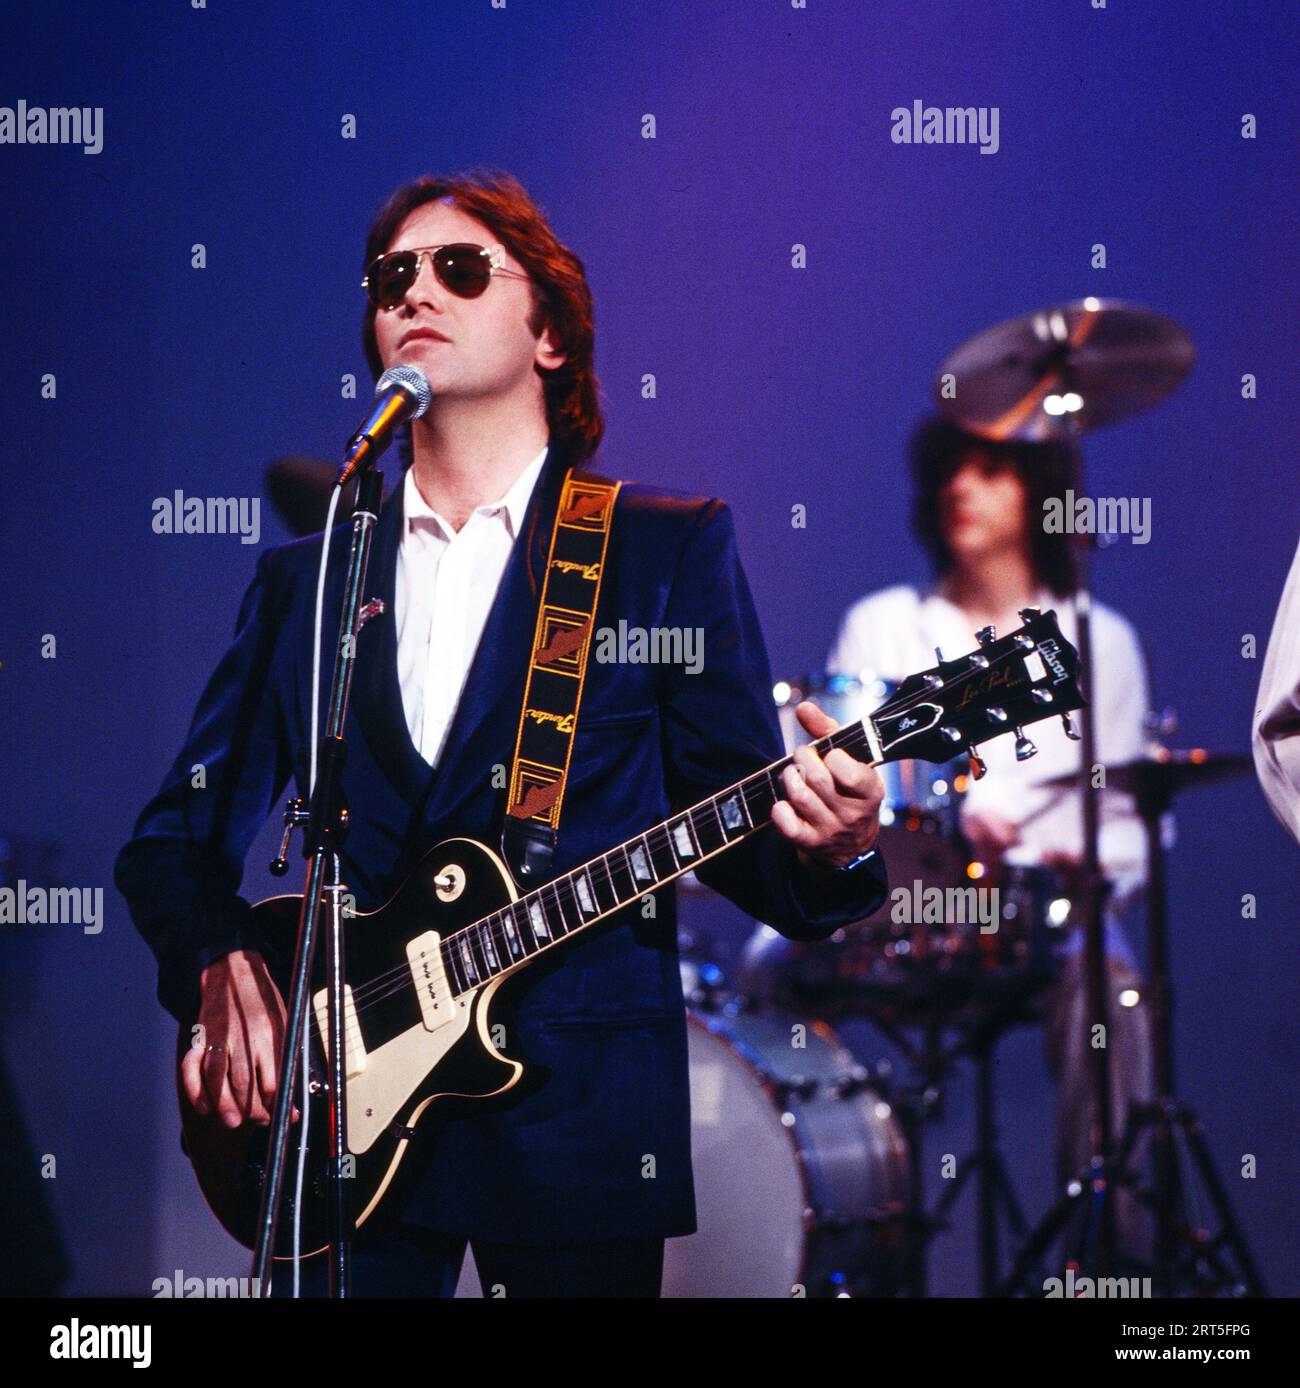 10cc, britische Rockband um den Sänger Rick Fenn mmit Sonnenbrille, bei einem Auftritt in Deutschland 1980. Stock Photo